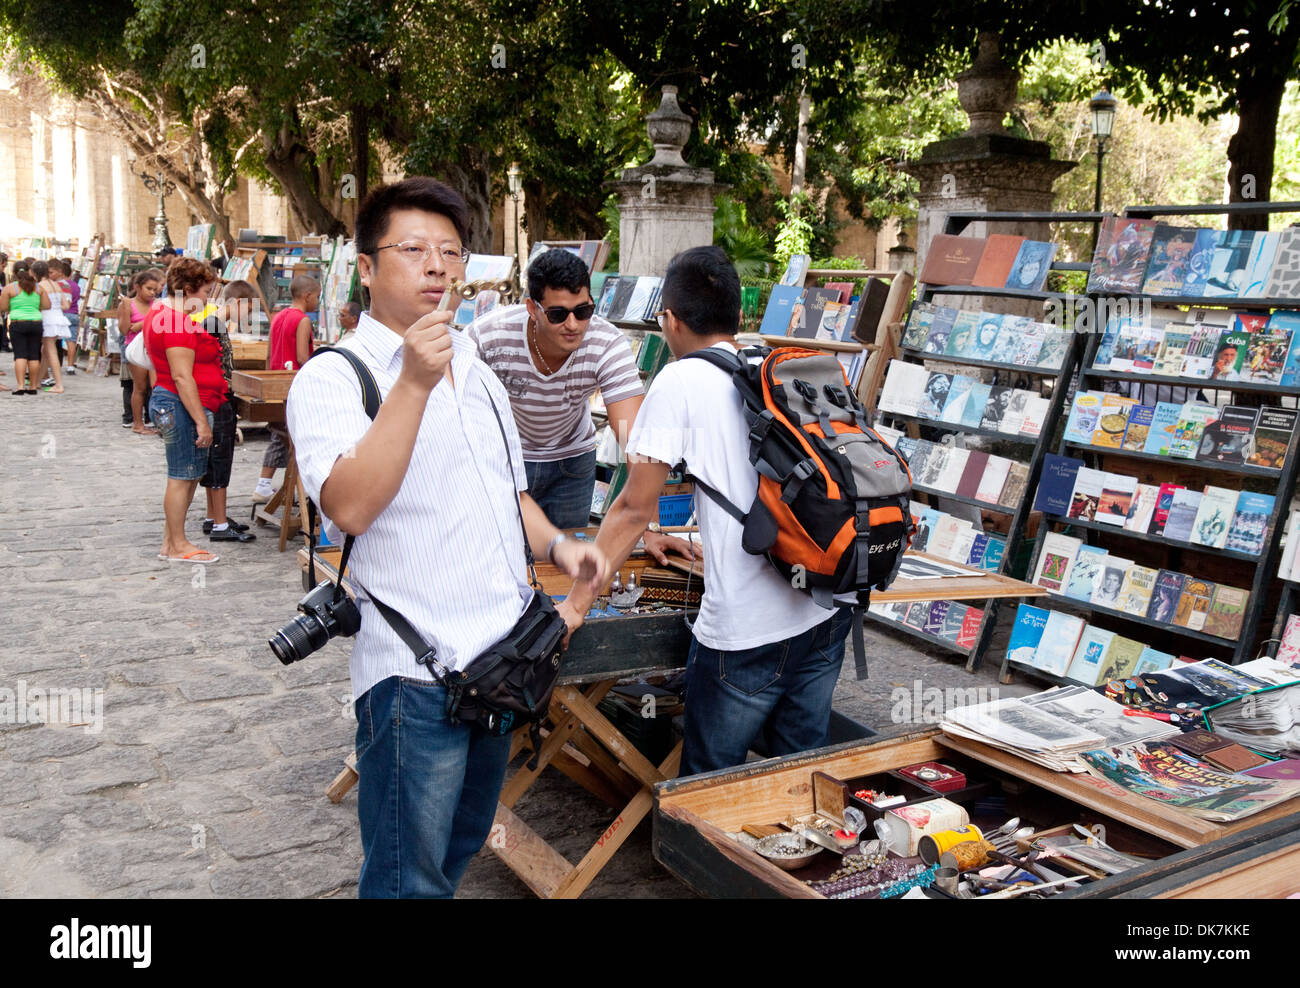 Chinesische Touristen in Kuba betrachtet man Bücher auf dem Markt, Plaza de Armas Square, Havanna, Caribbean Stockfoto